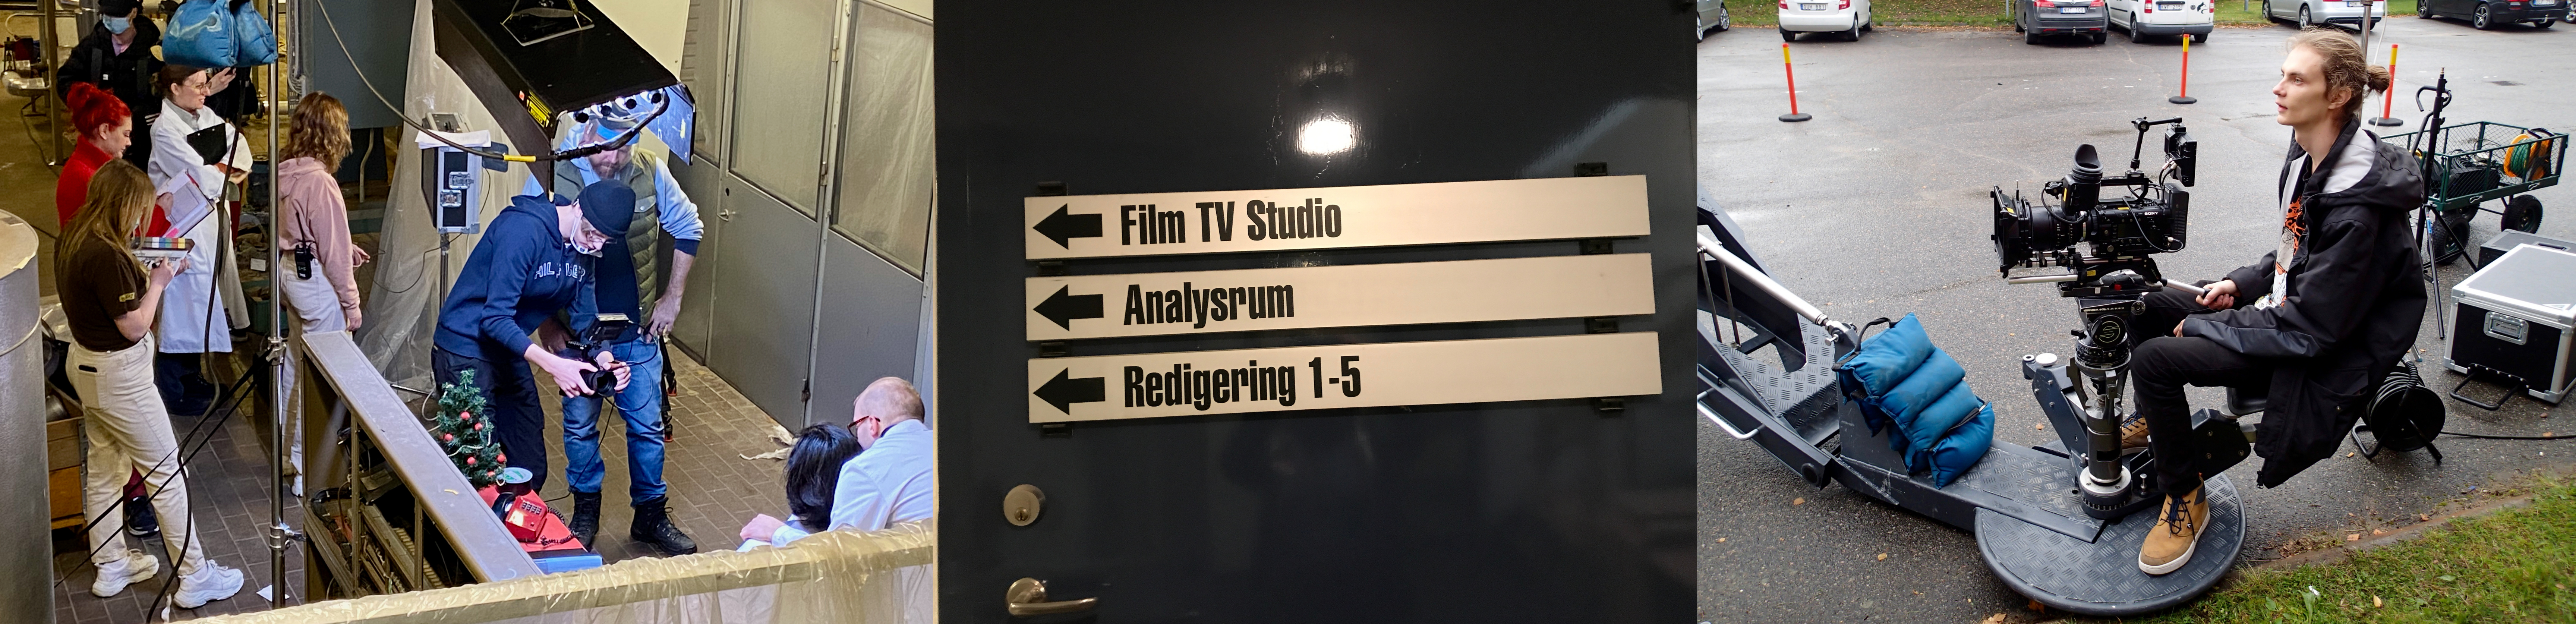 Kollage en filminspelning, en dörr med skyltar till TV-studio, analysrum och redigeringsrum, en kameraman.